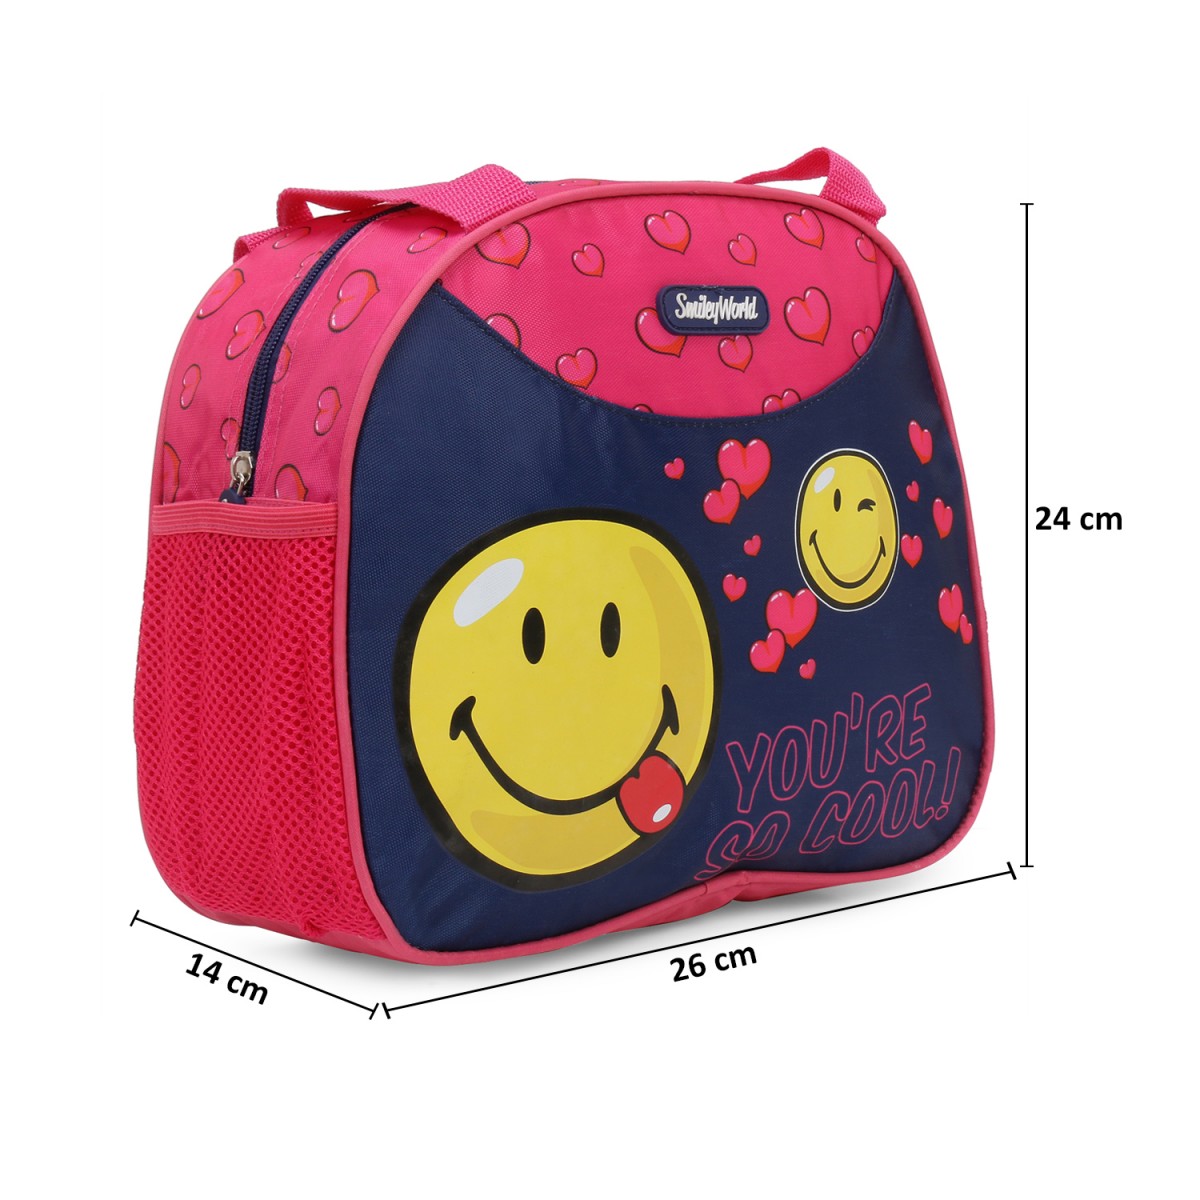 Smiley World Multi utility bag Multicolor 3Y+